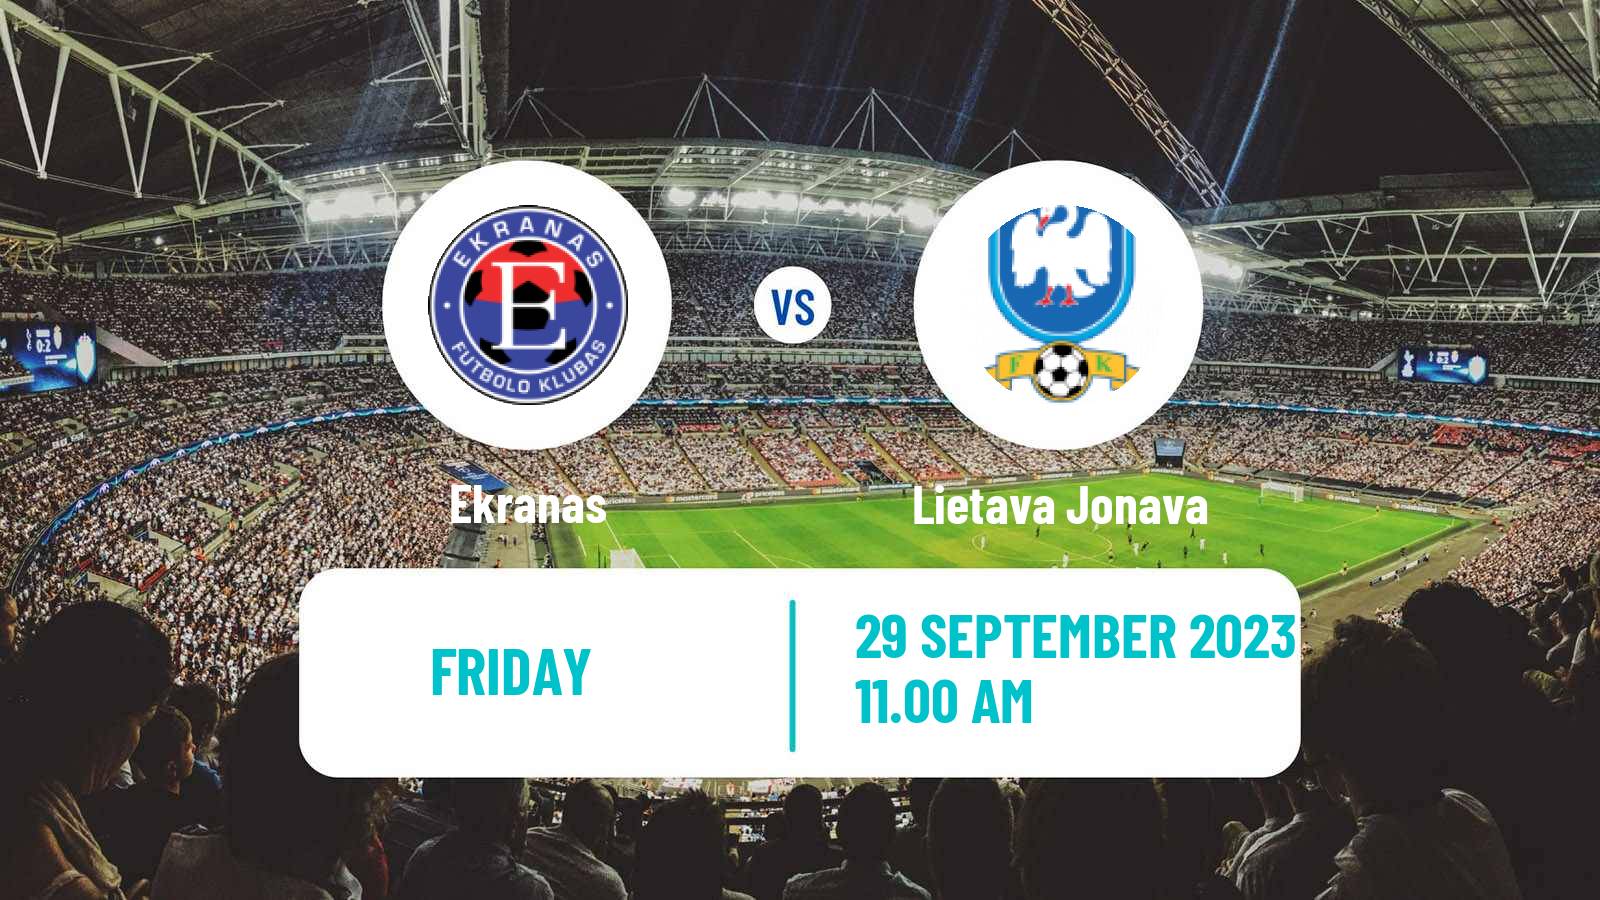 Soccer Lithuanian Division 2 Ekranas - Lietava Jonava